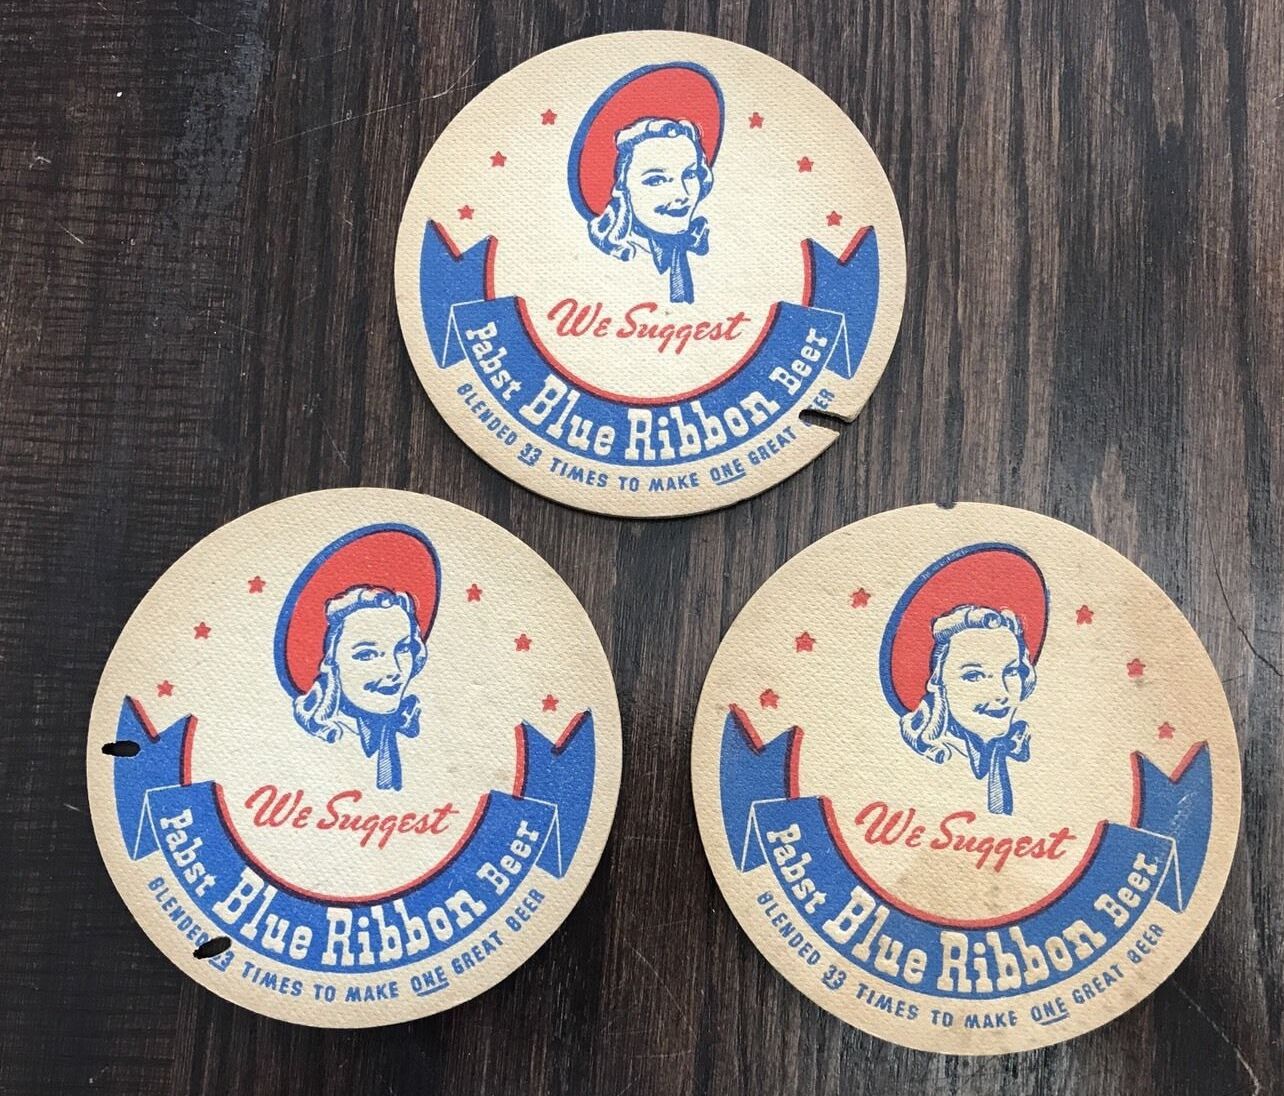 3 Vintage 2-Sided PABST BLUE RIBBON BEER Cardboard Coasters We Suggest PBR Beer